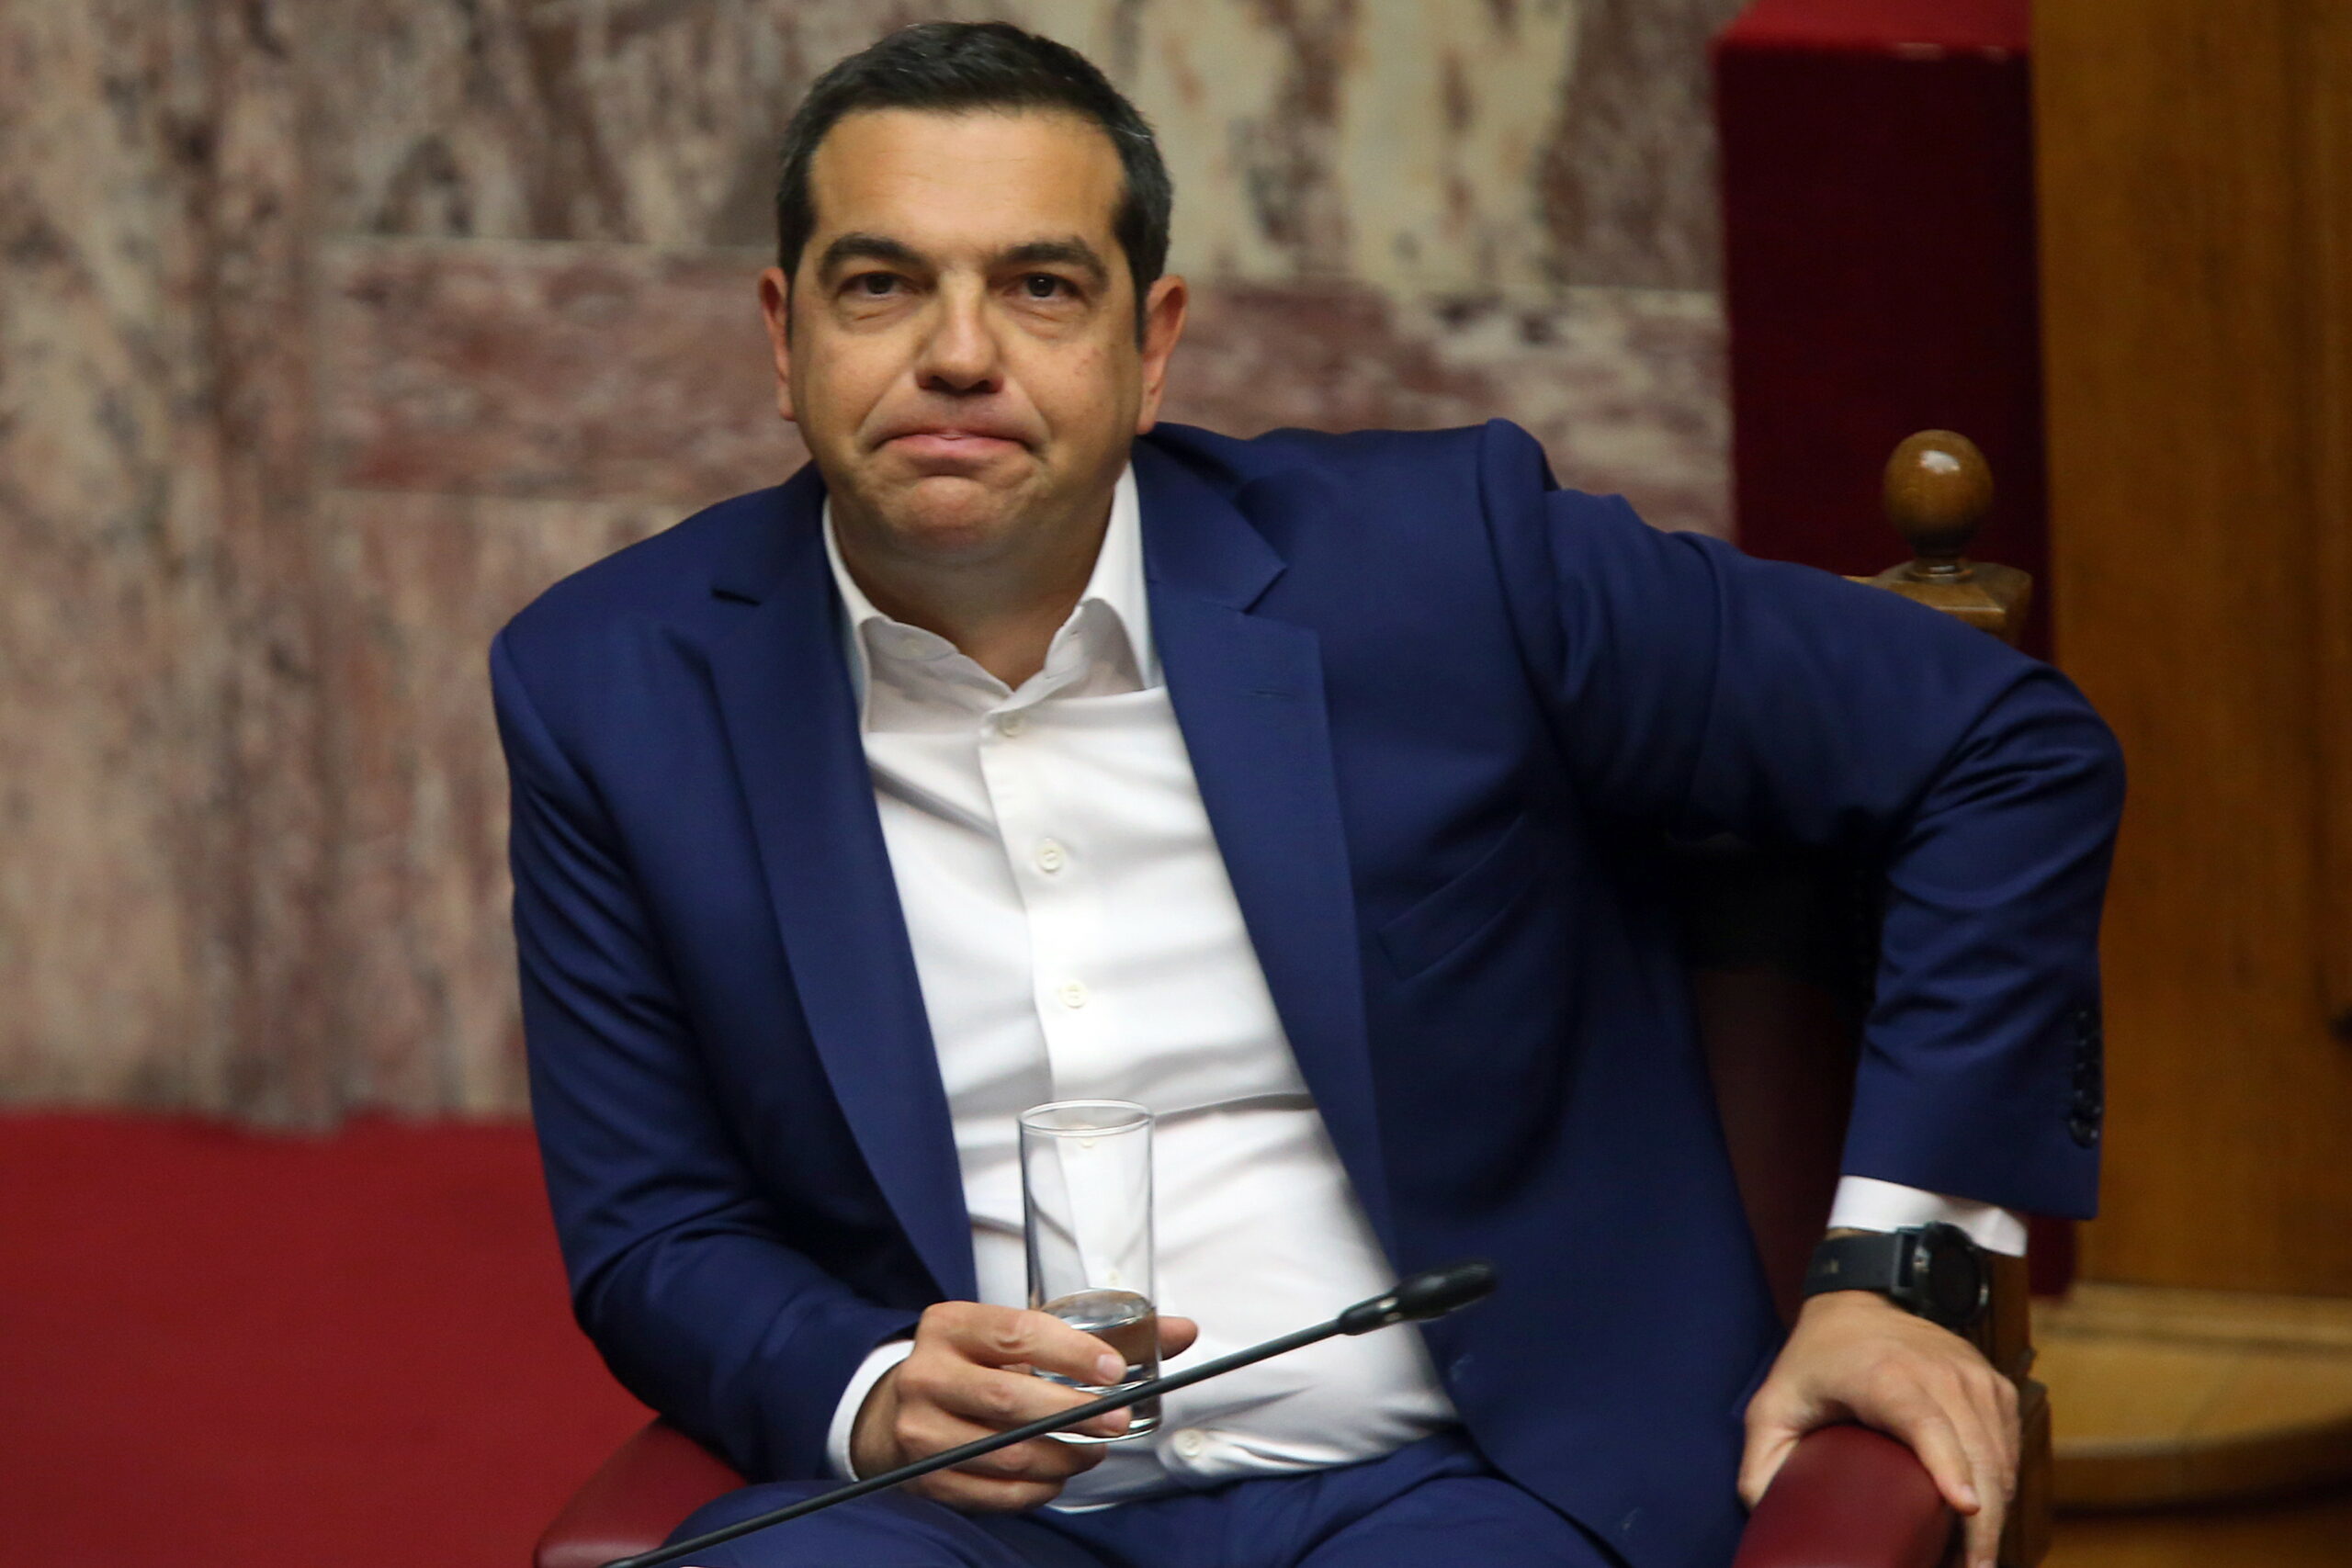 Ο ΣΥΡΙΖΑ μετά τον Τσίπρα.  Τι θα επιλέξει η ελληνική ακροαριστερά